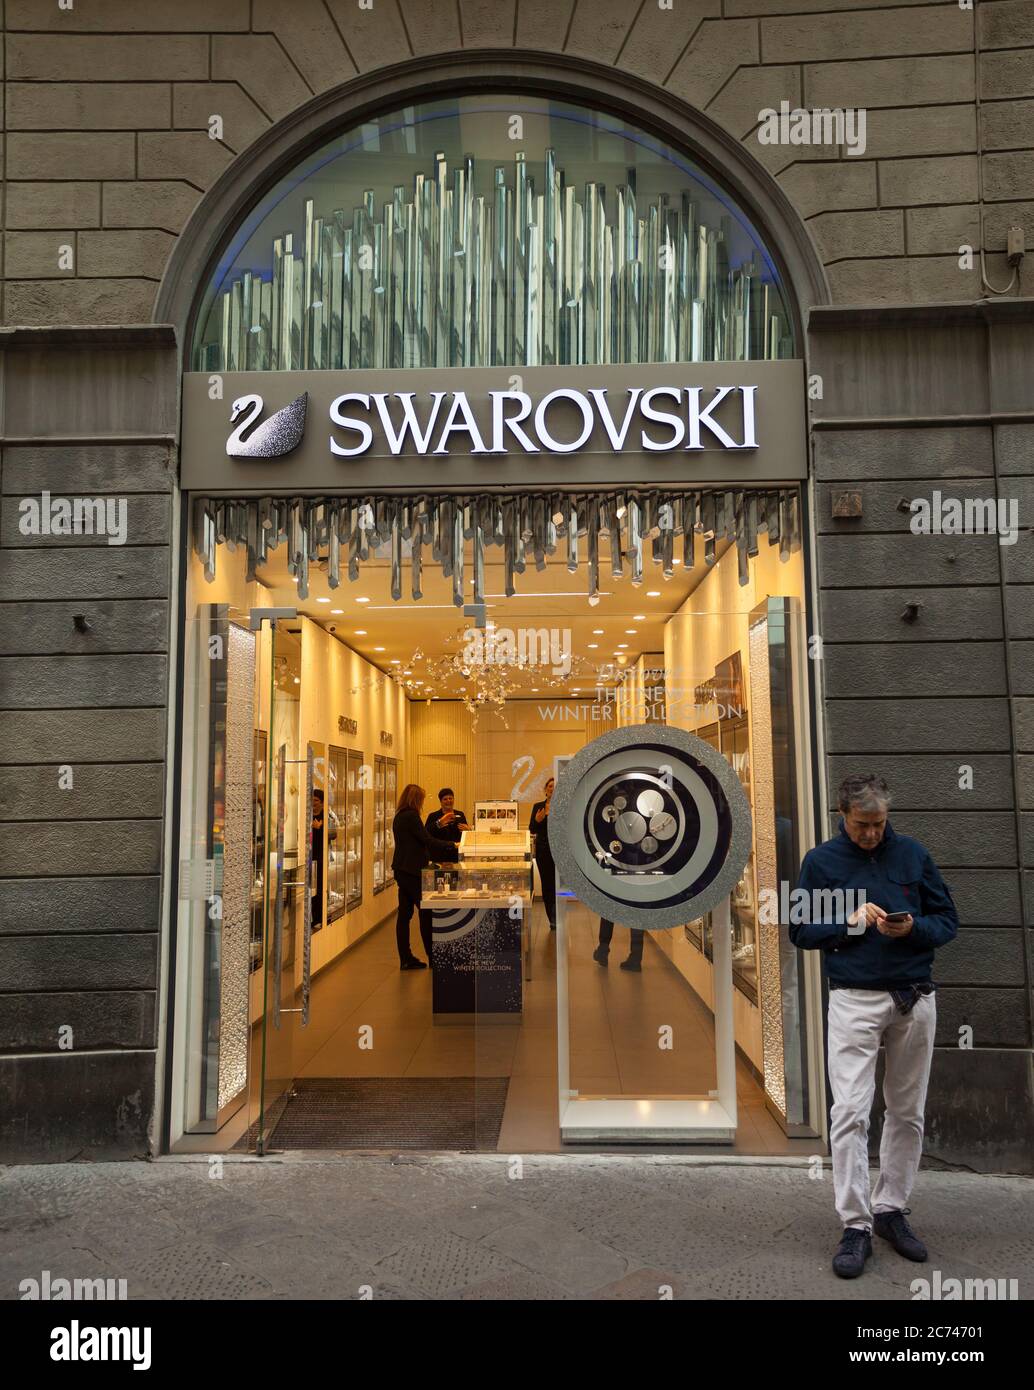 Firenze, Italia - 04 novembre 2017: Negozio Swarovski. Gioielli di qualità. Produttore austriaco di vetro al piombo, comunemente chiamato cristallo. Collezione esclusiva di Foto Stock